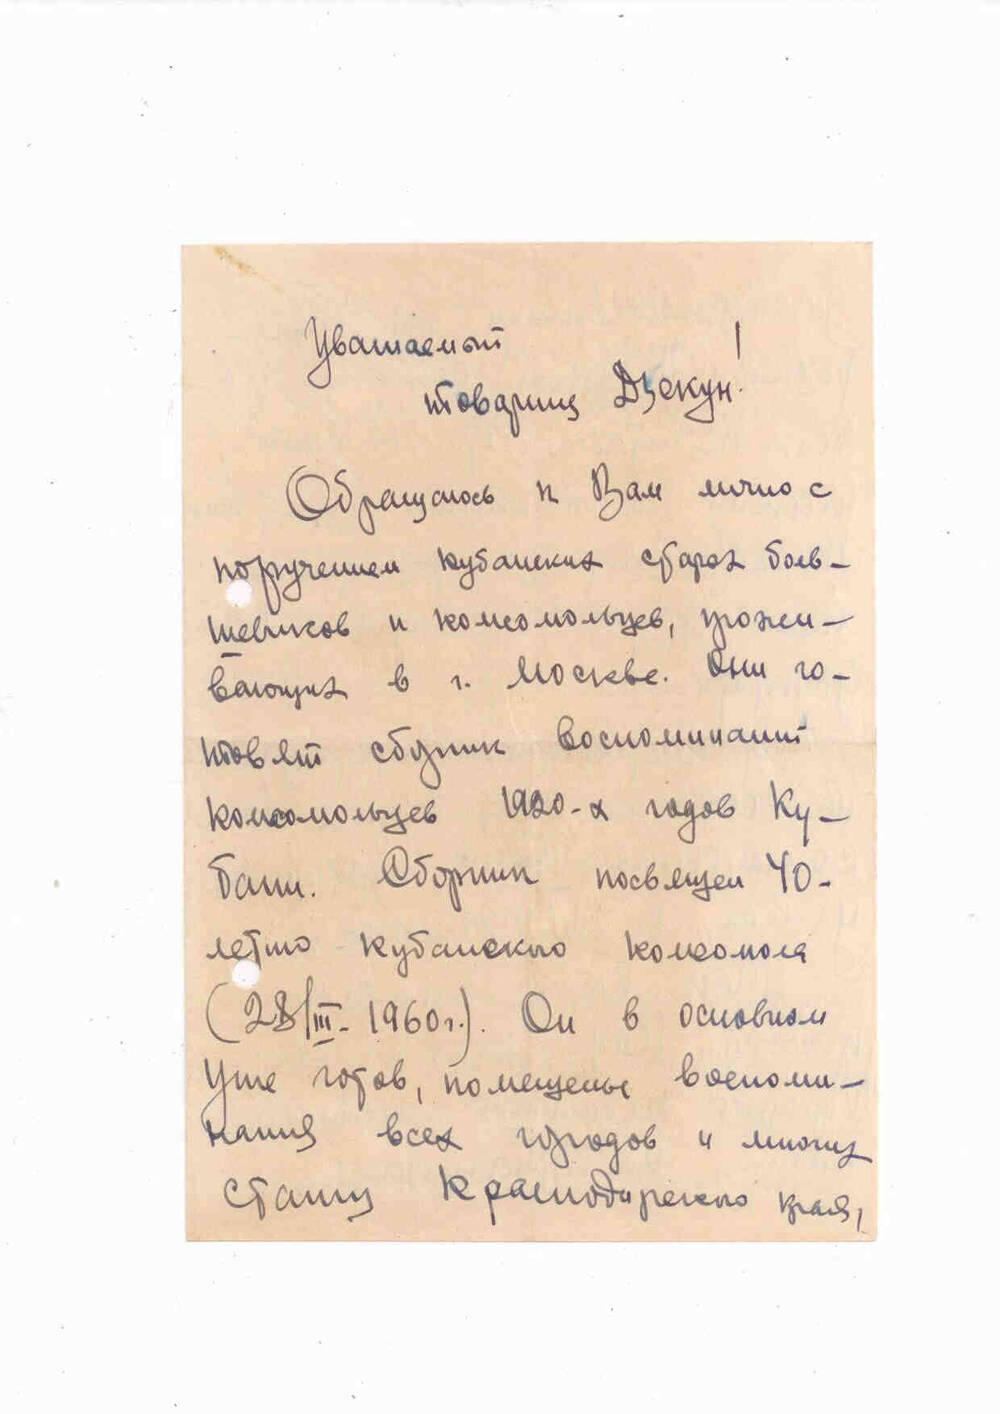 Письмо Дзекуну Г.А. от Куценко Я.И. 15/VII-59 г.